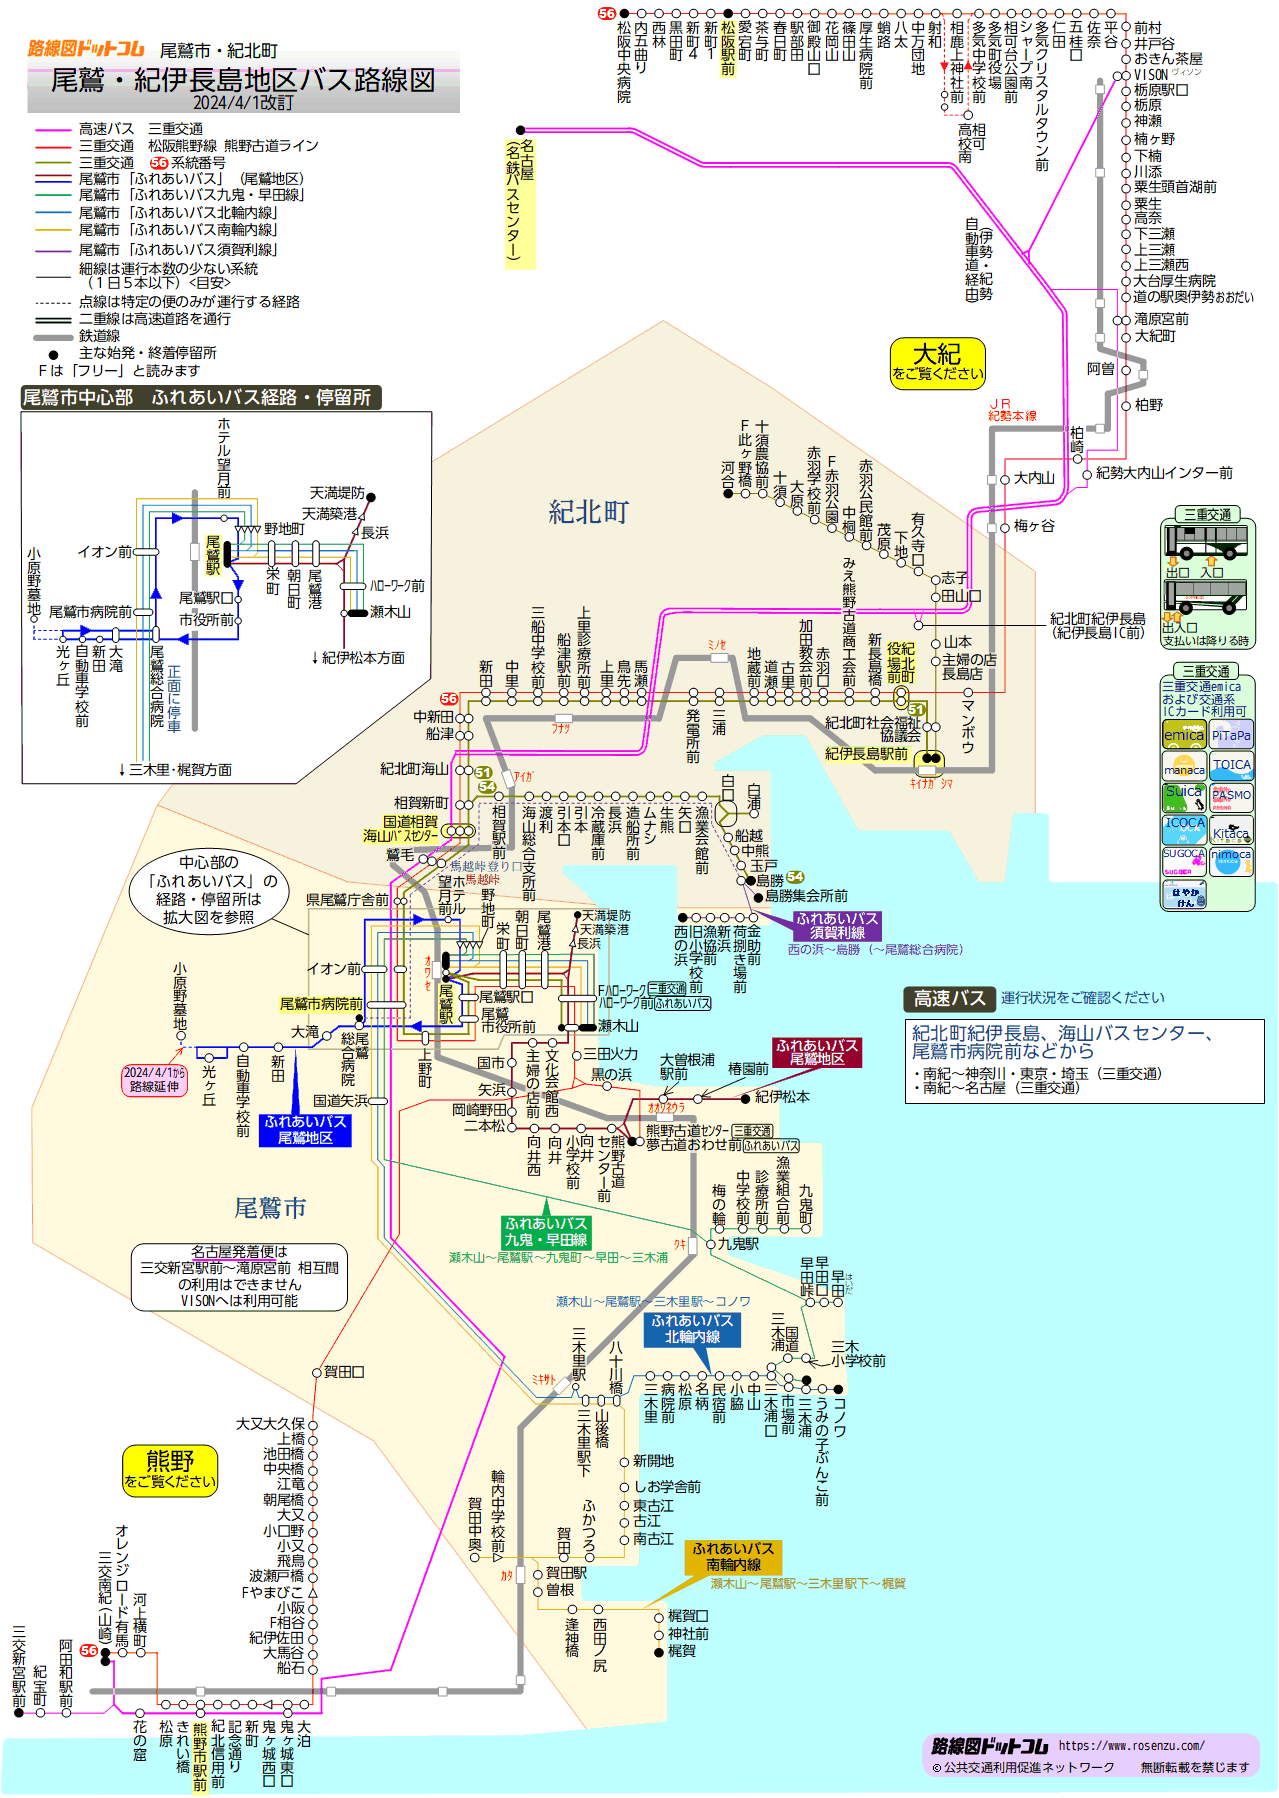 路線図ドットコム 三重県 尾鷲 紀伊長島地区バス路線図